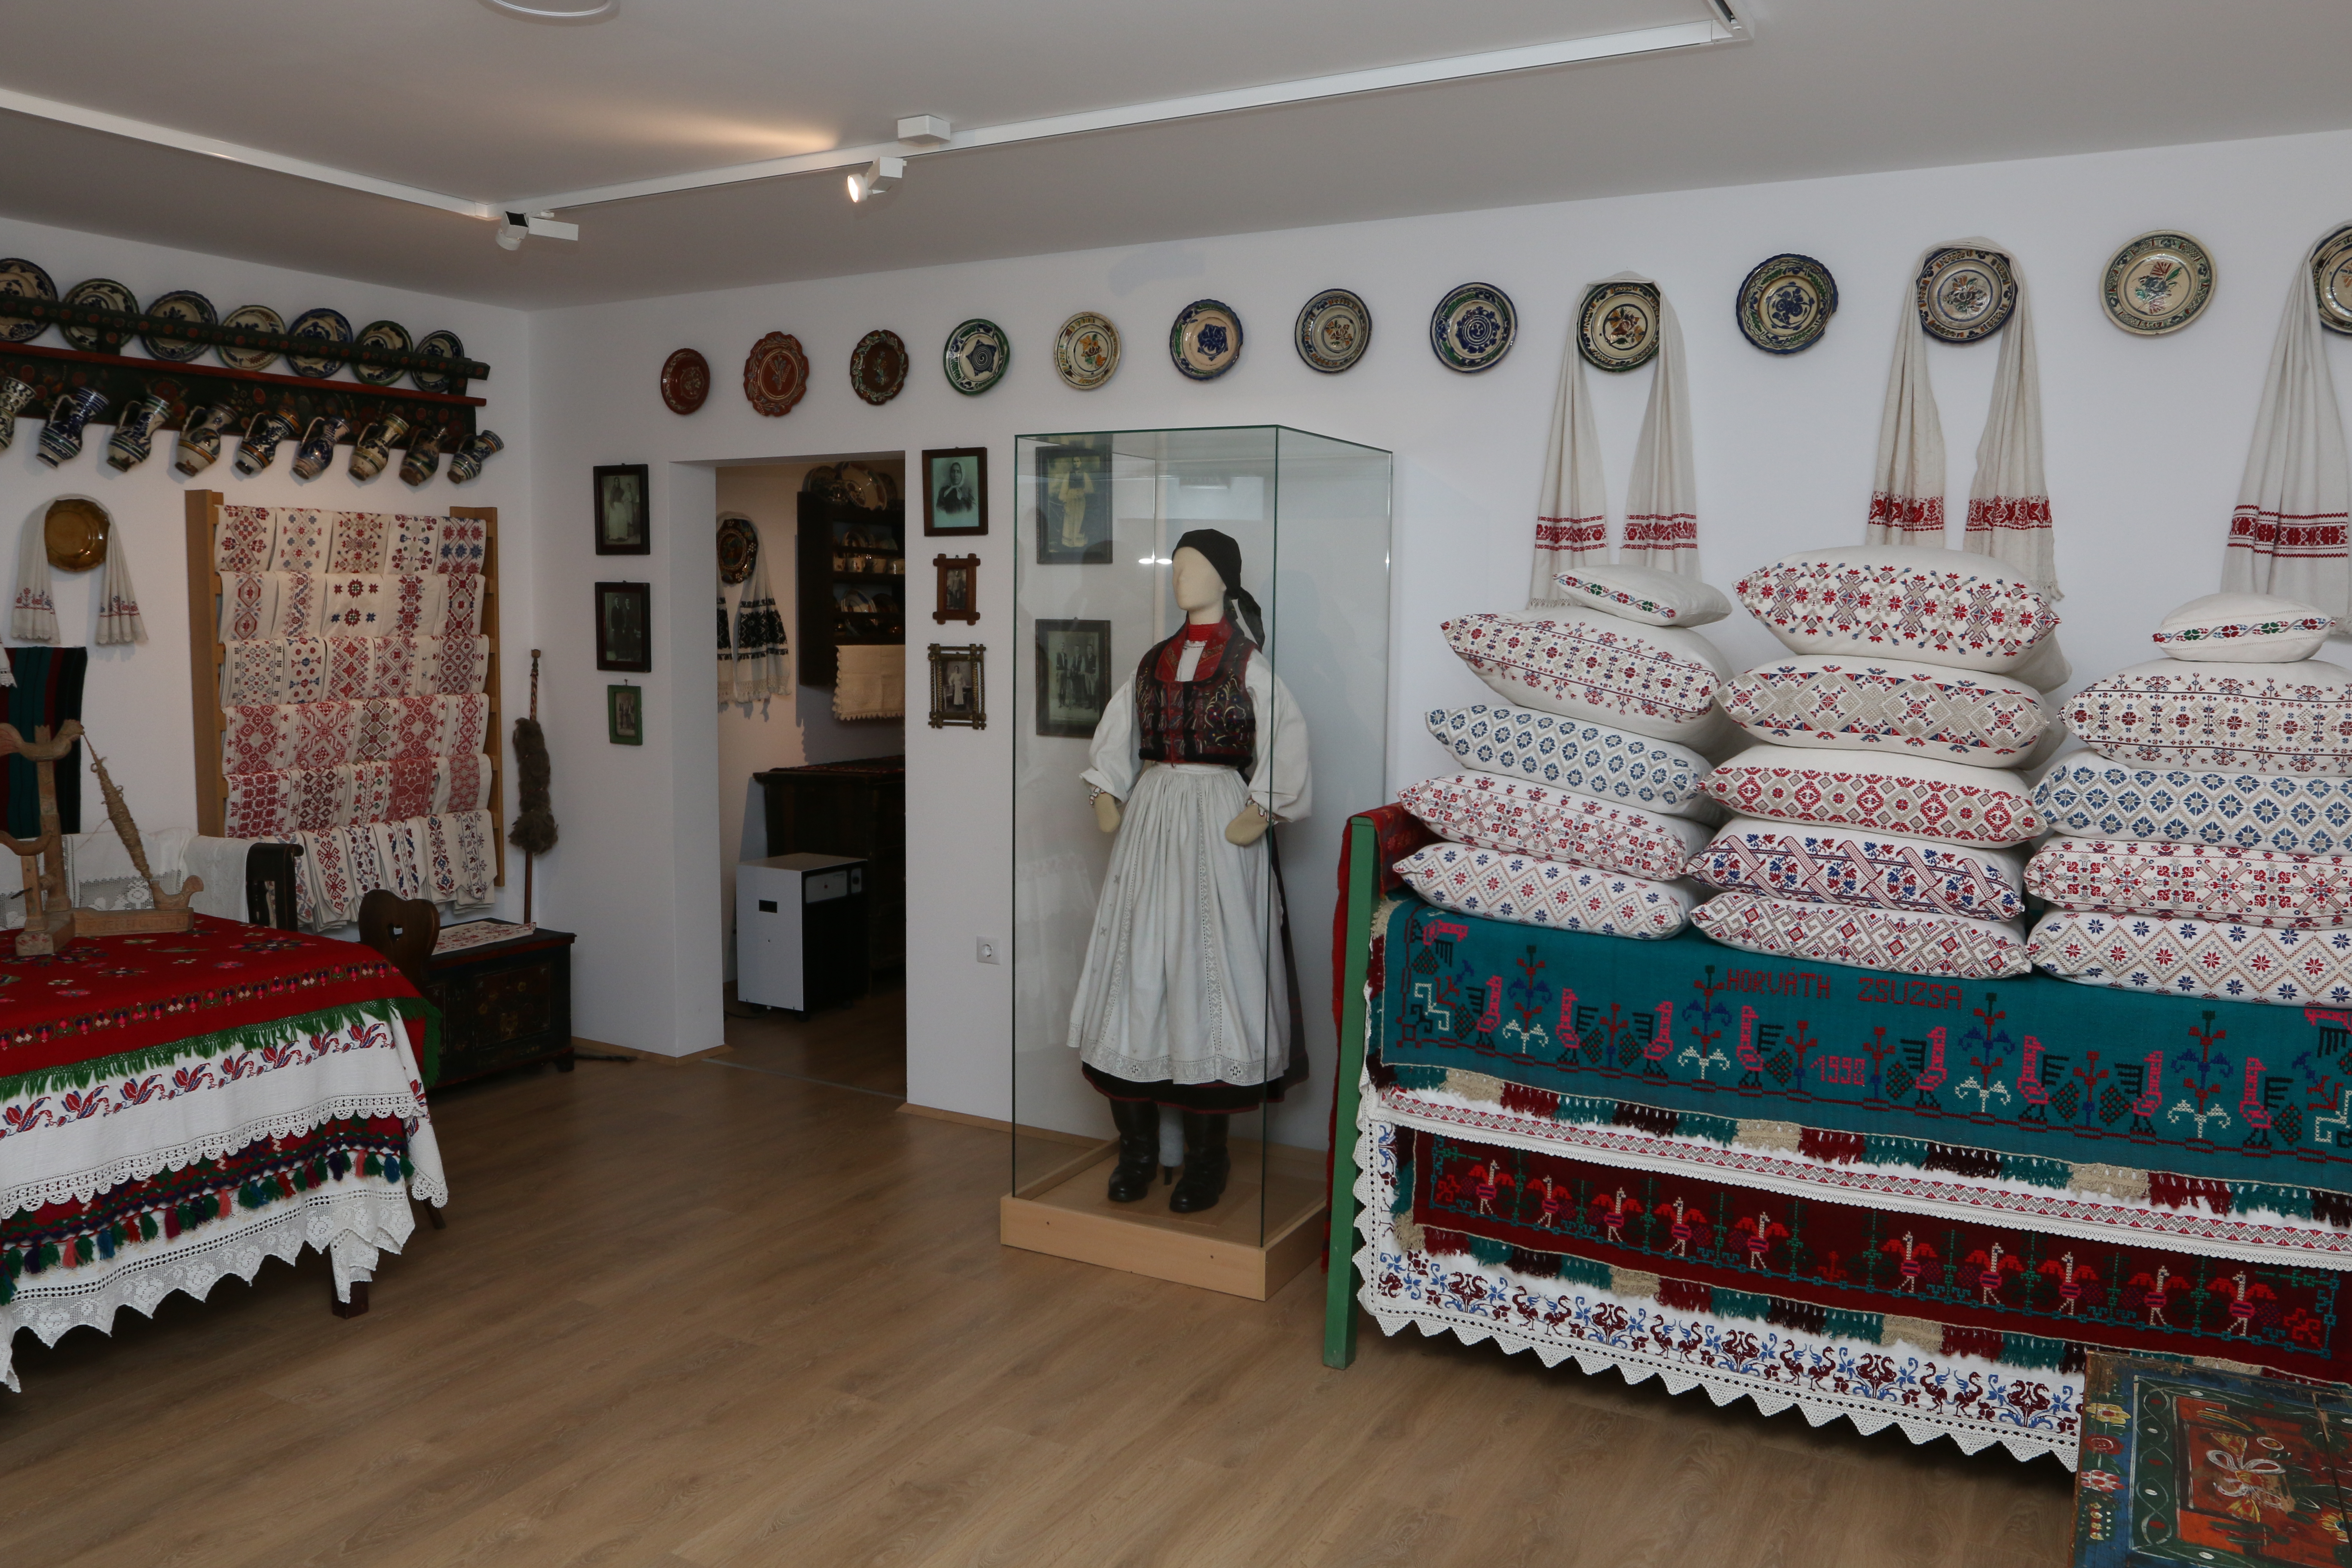 “Camera curată” din satul Răscruci la Muzeul și Centrul Etnografic Zoltán Kallós